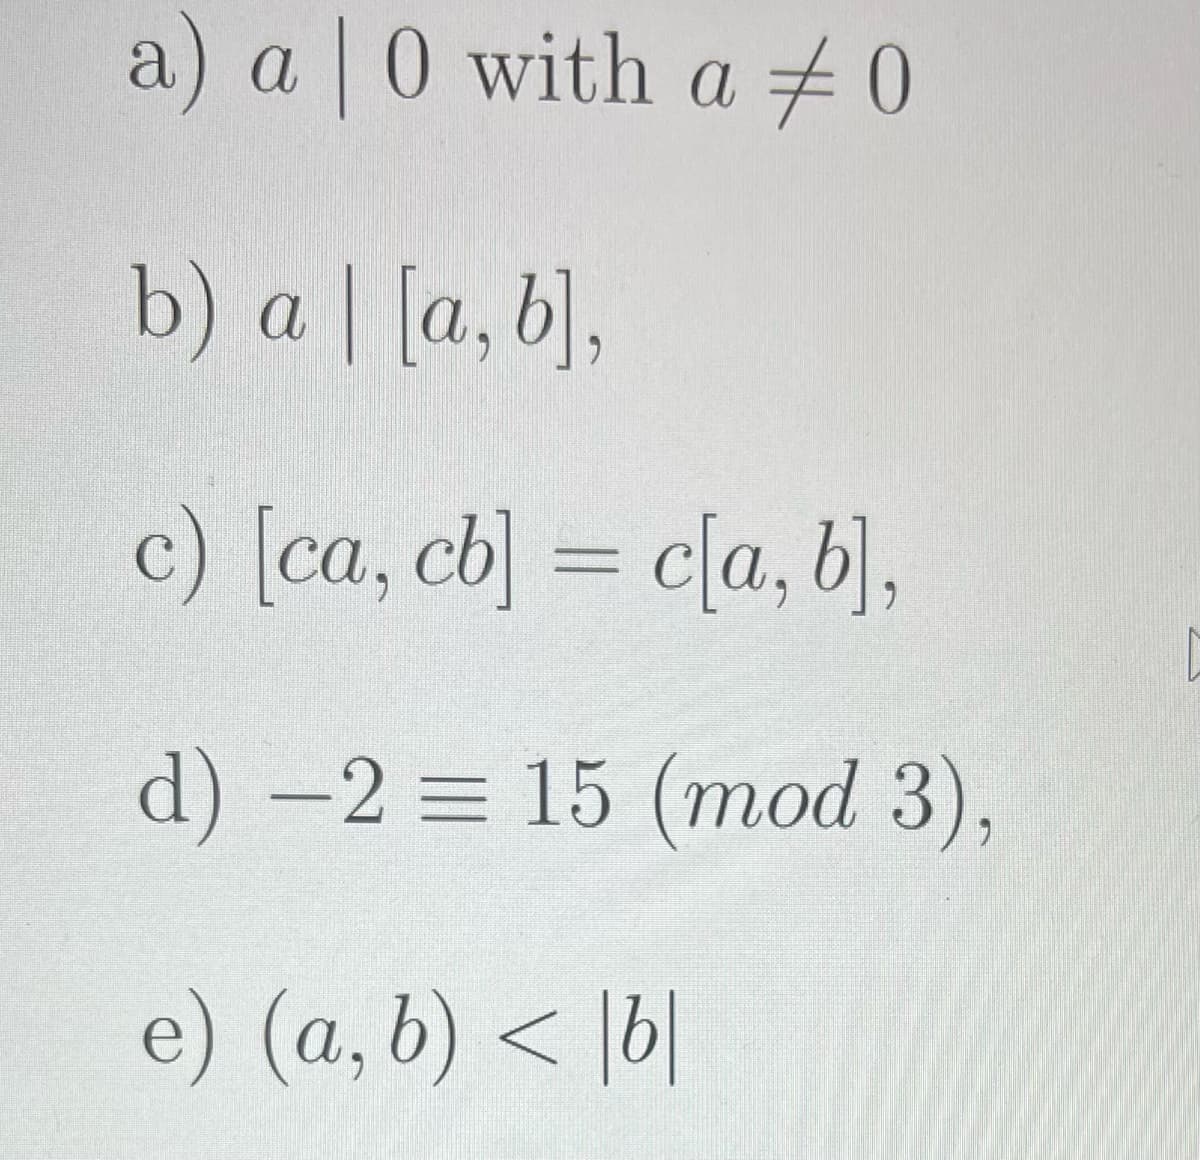 a) a 0 with a +0
b) a | [a, b],
c) [ca, cb] = c[a, b],
d) -2 = 15 (mod 3),
e) (a, b) < |b|
